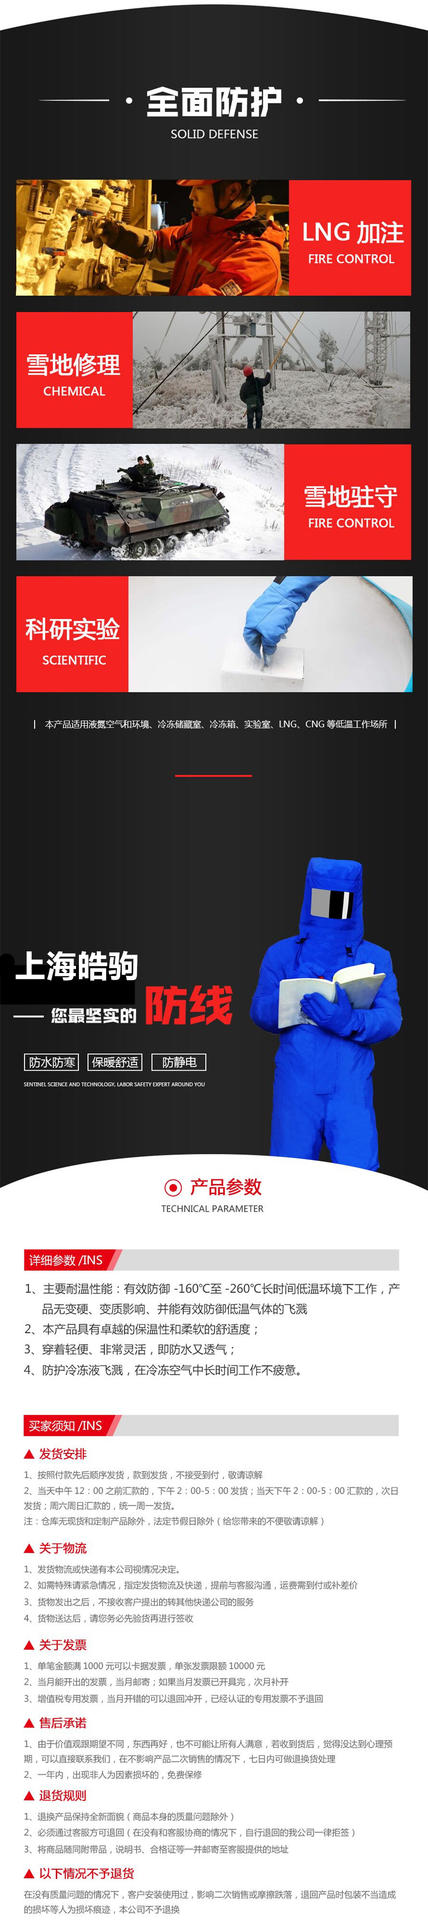 上海皓驹 FSR0228低温防护服 液氮防护服 防冻服 LNG防护服 CNG防护服 超低温防护服示例图3